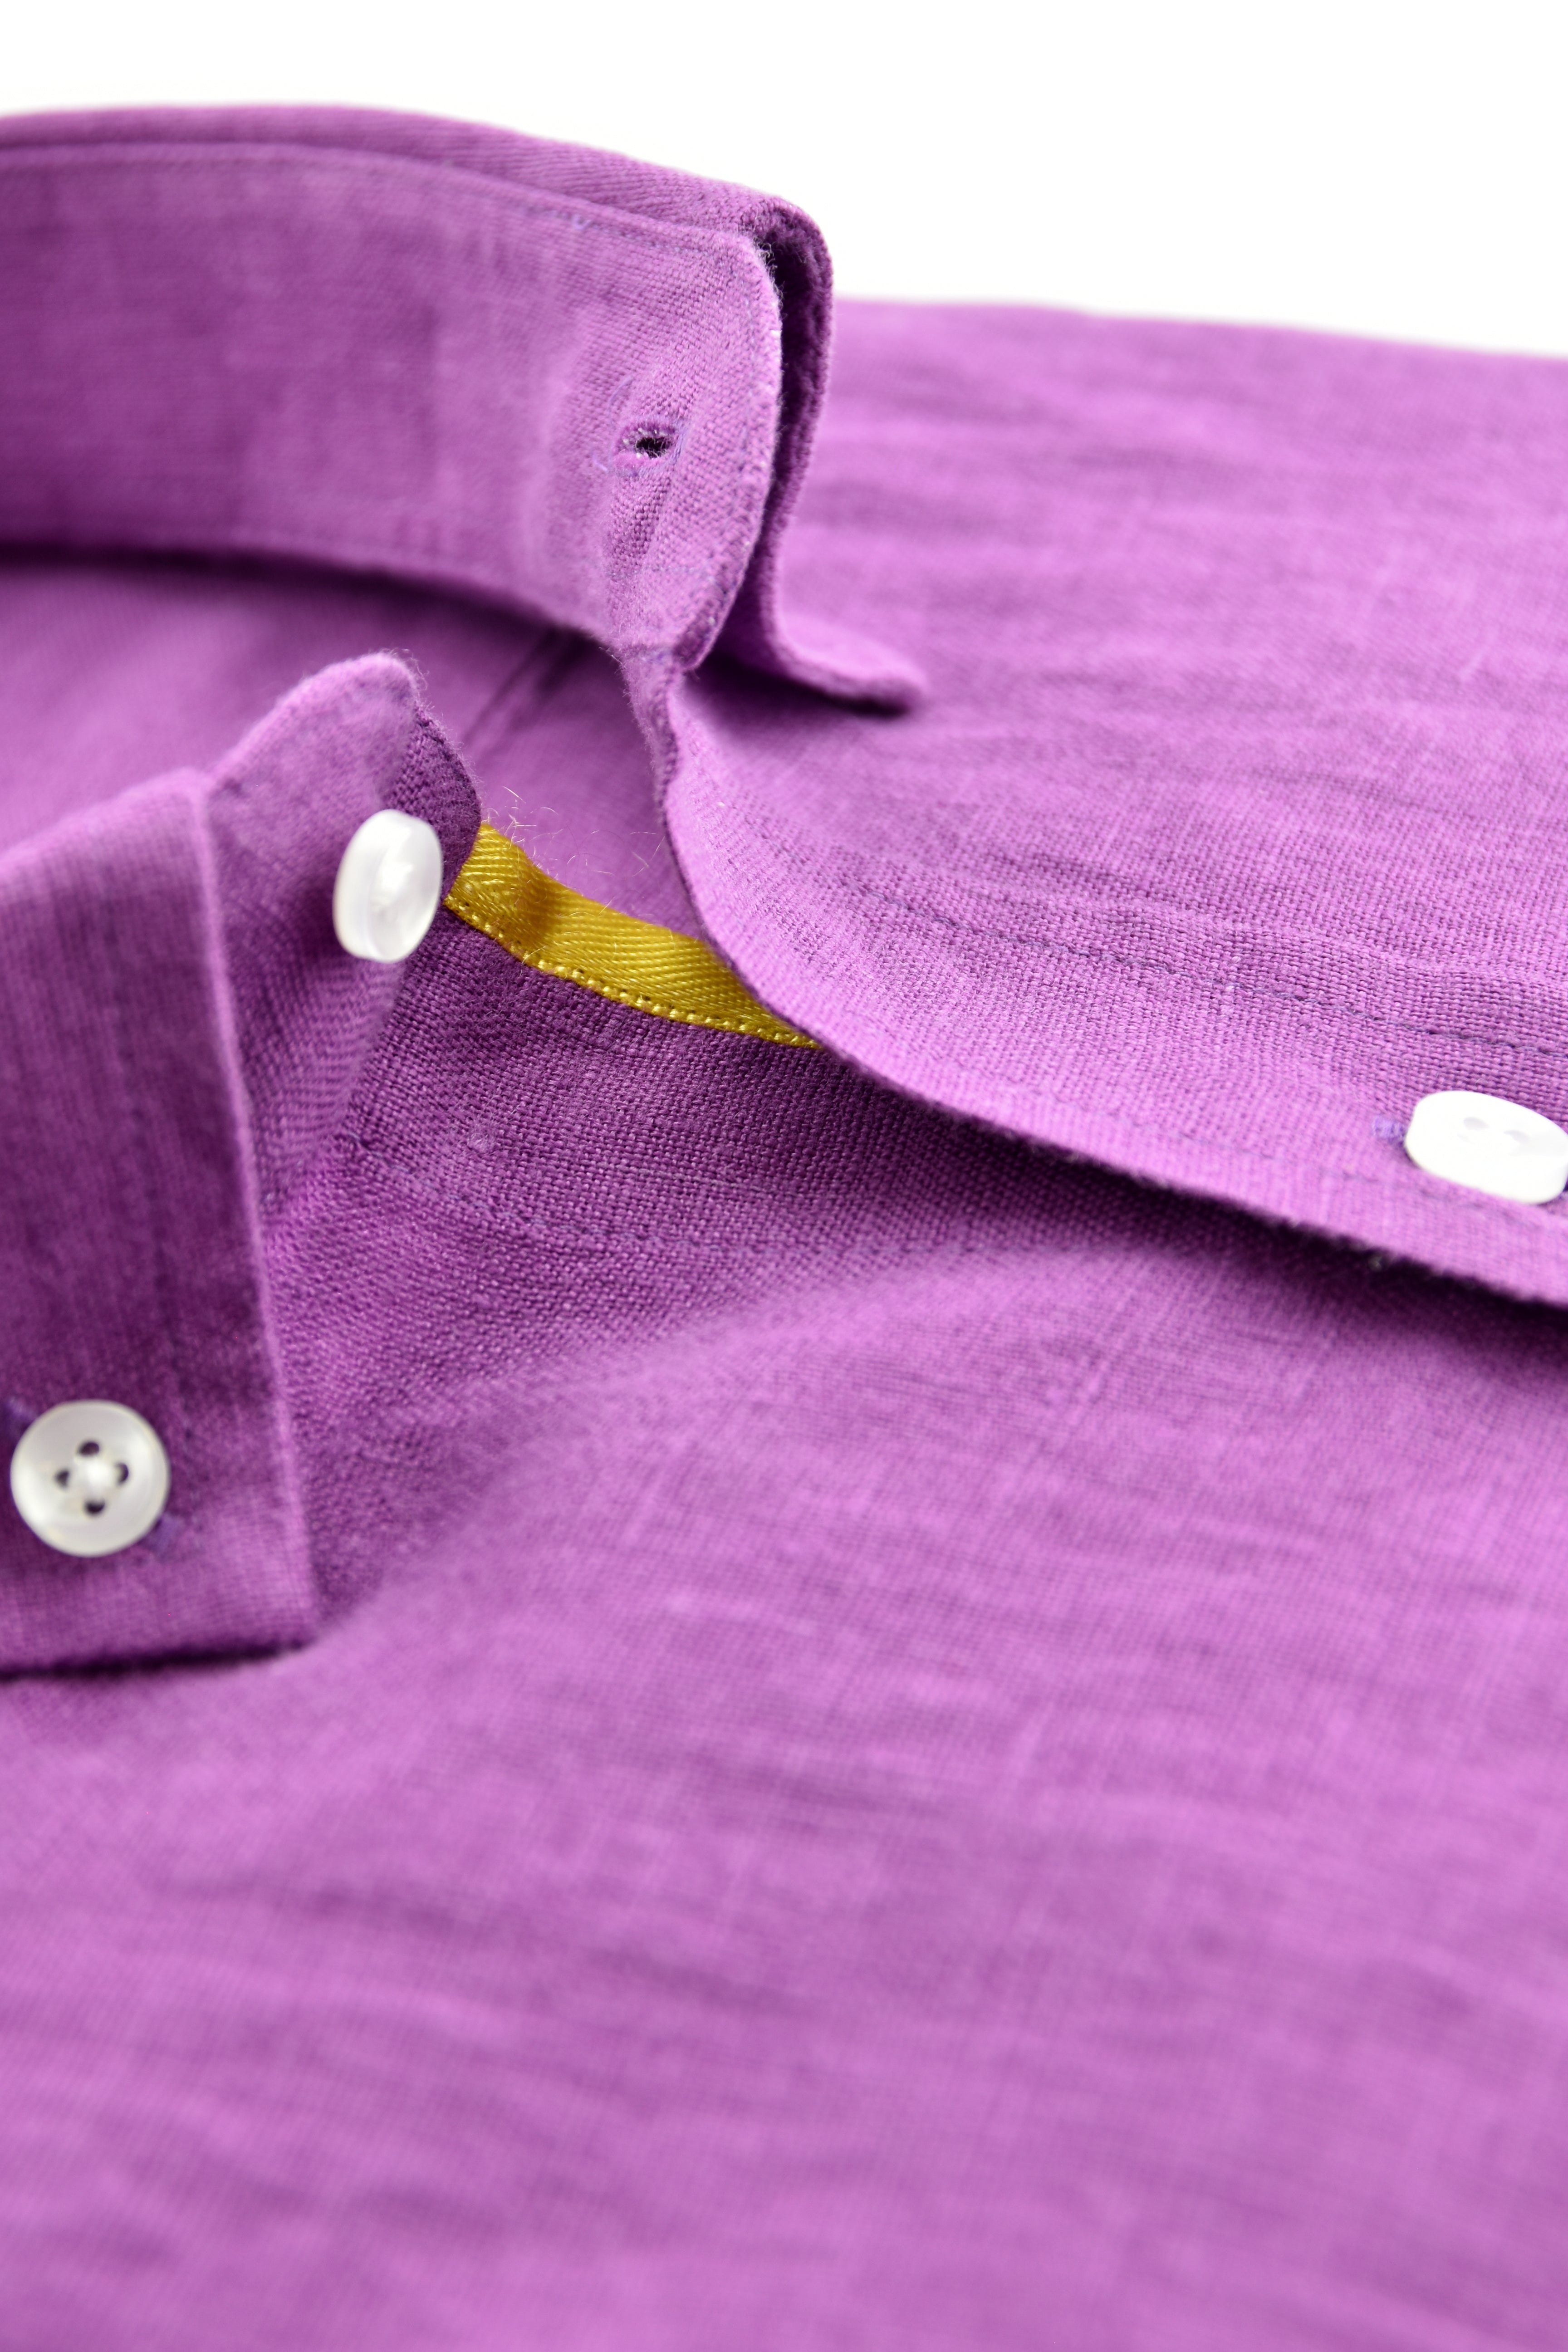 Purple plain linen